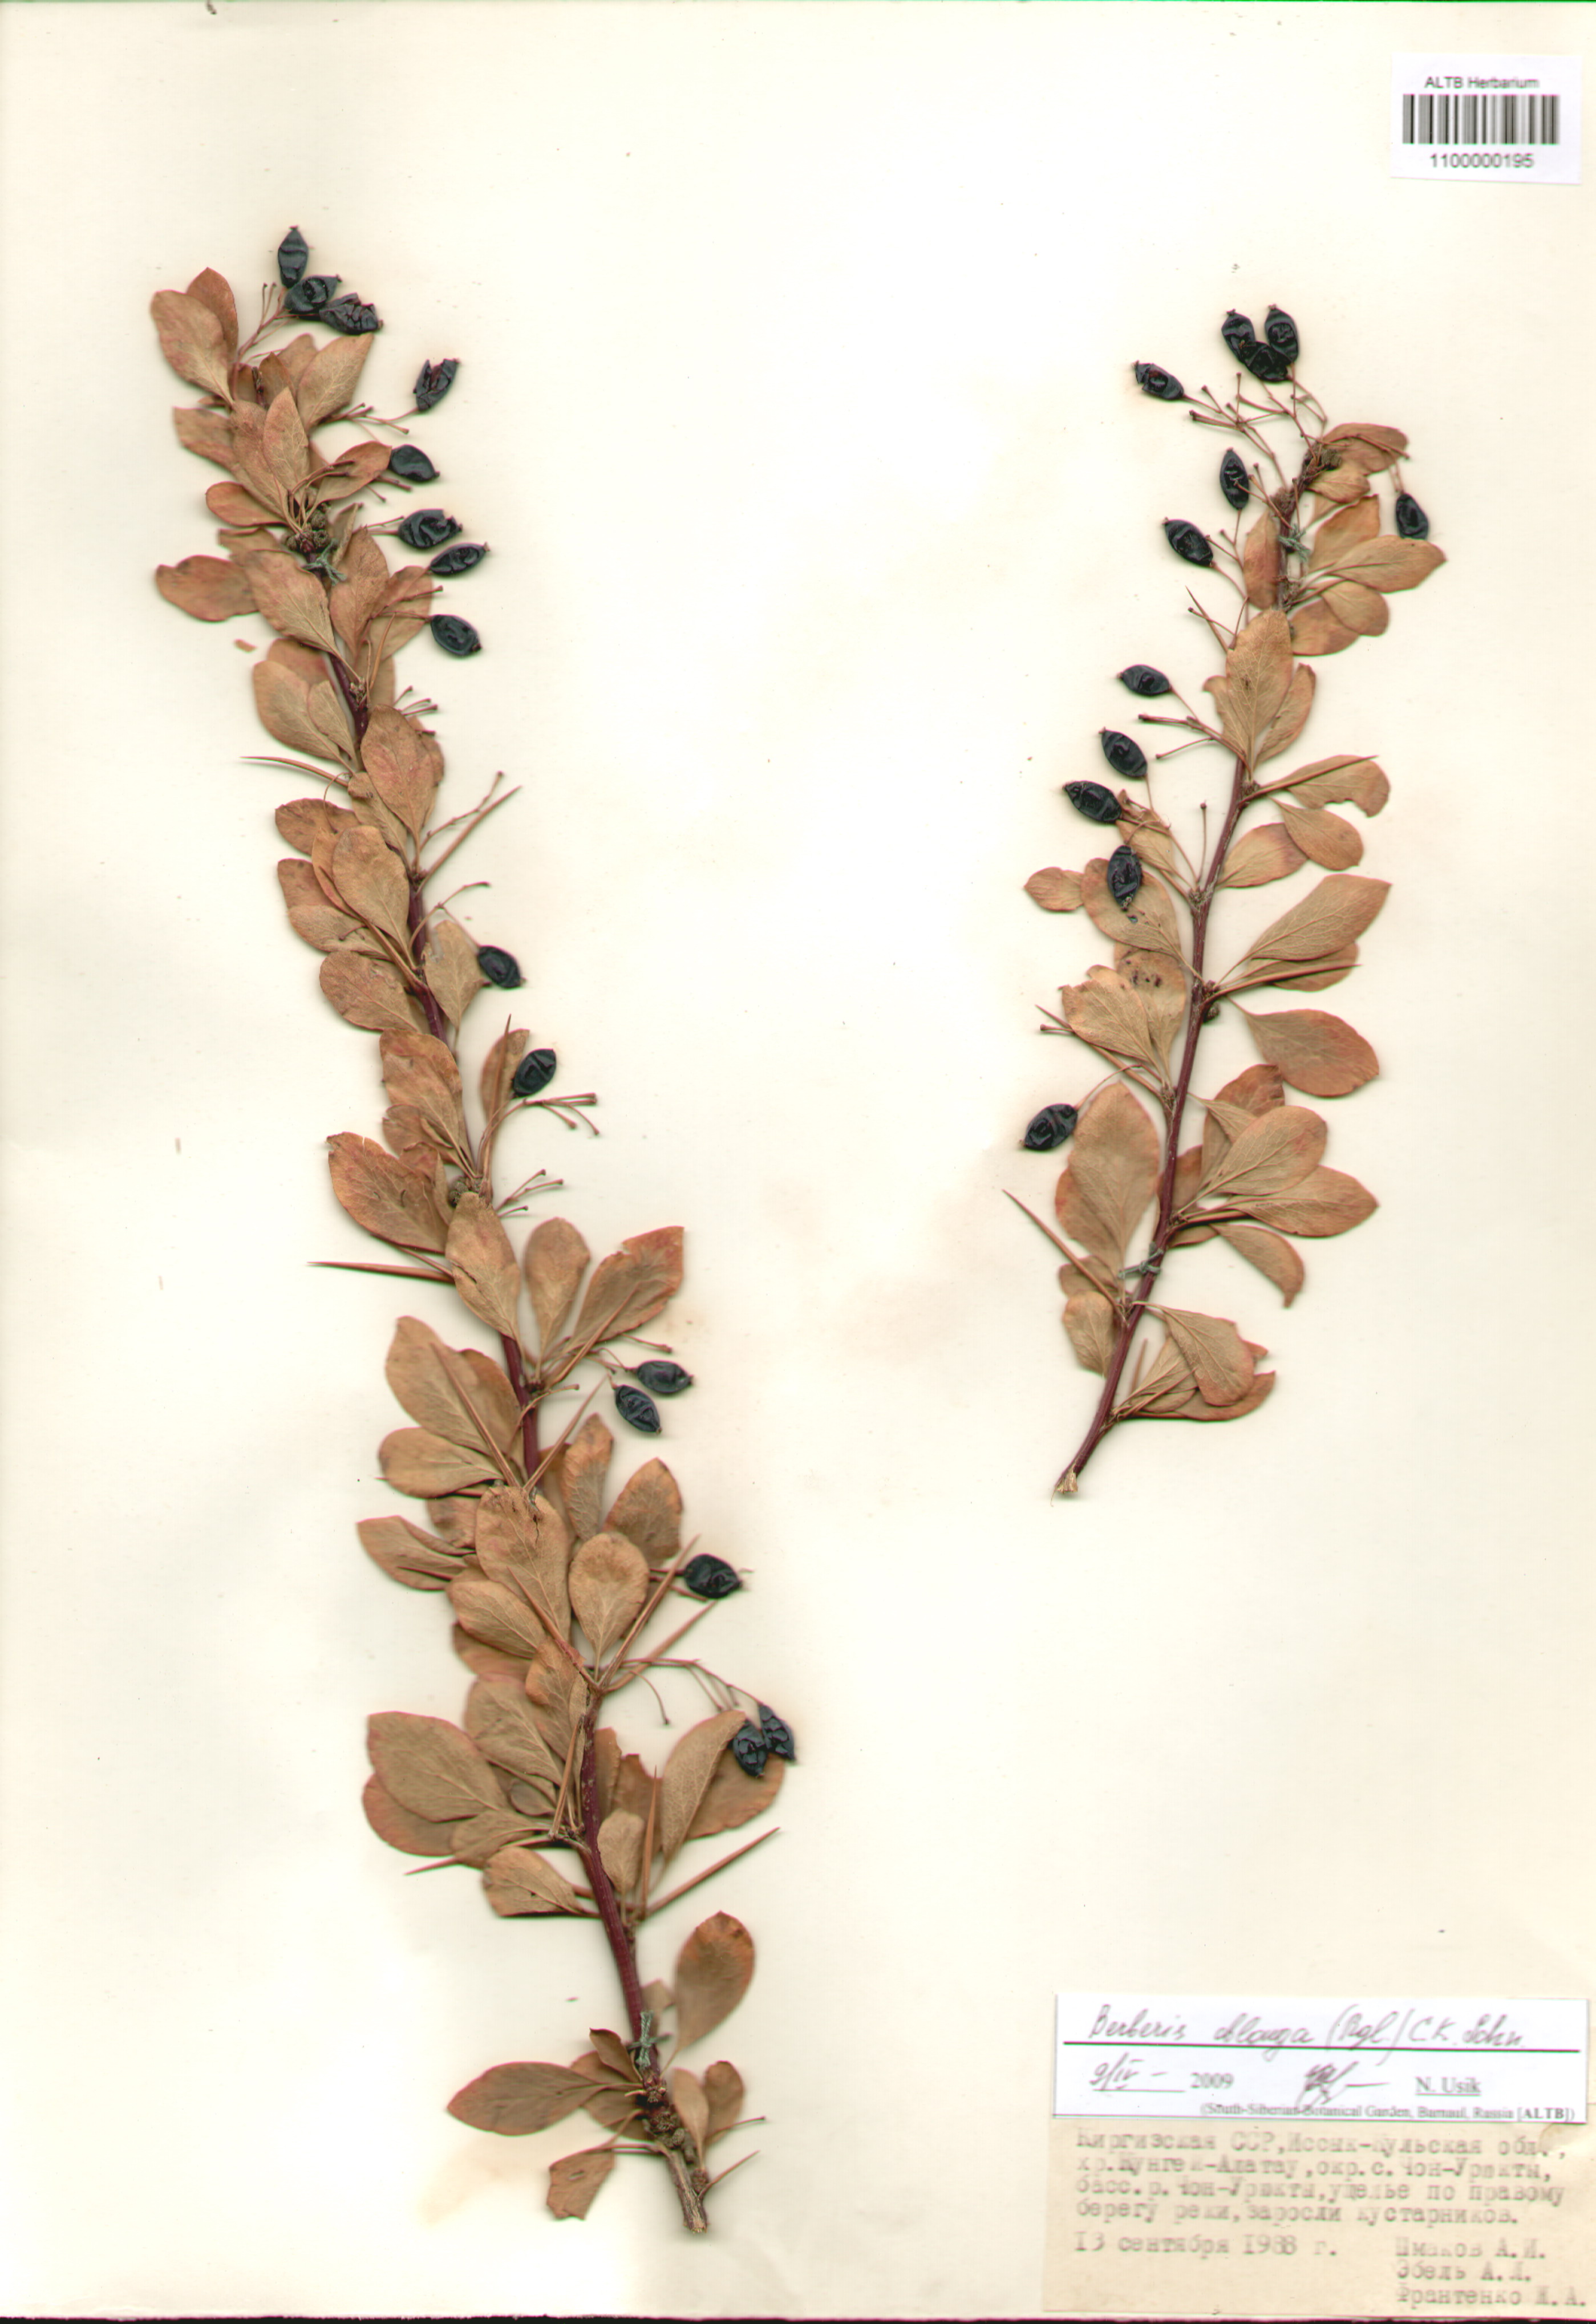 Berberidaceae,Berberis oblonga (Rgl.) C.K. Schn.